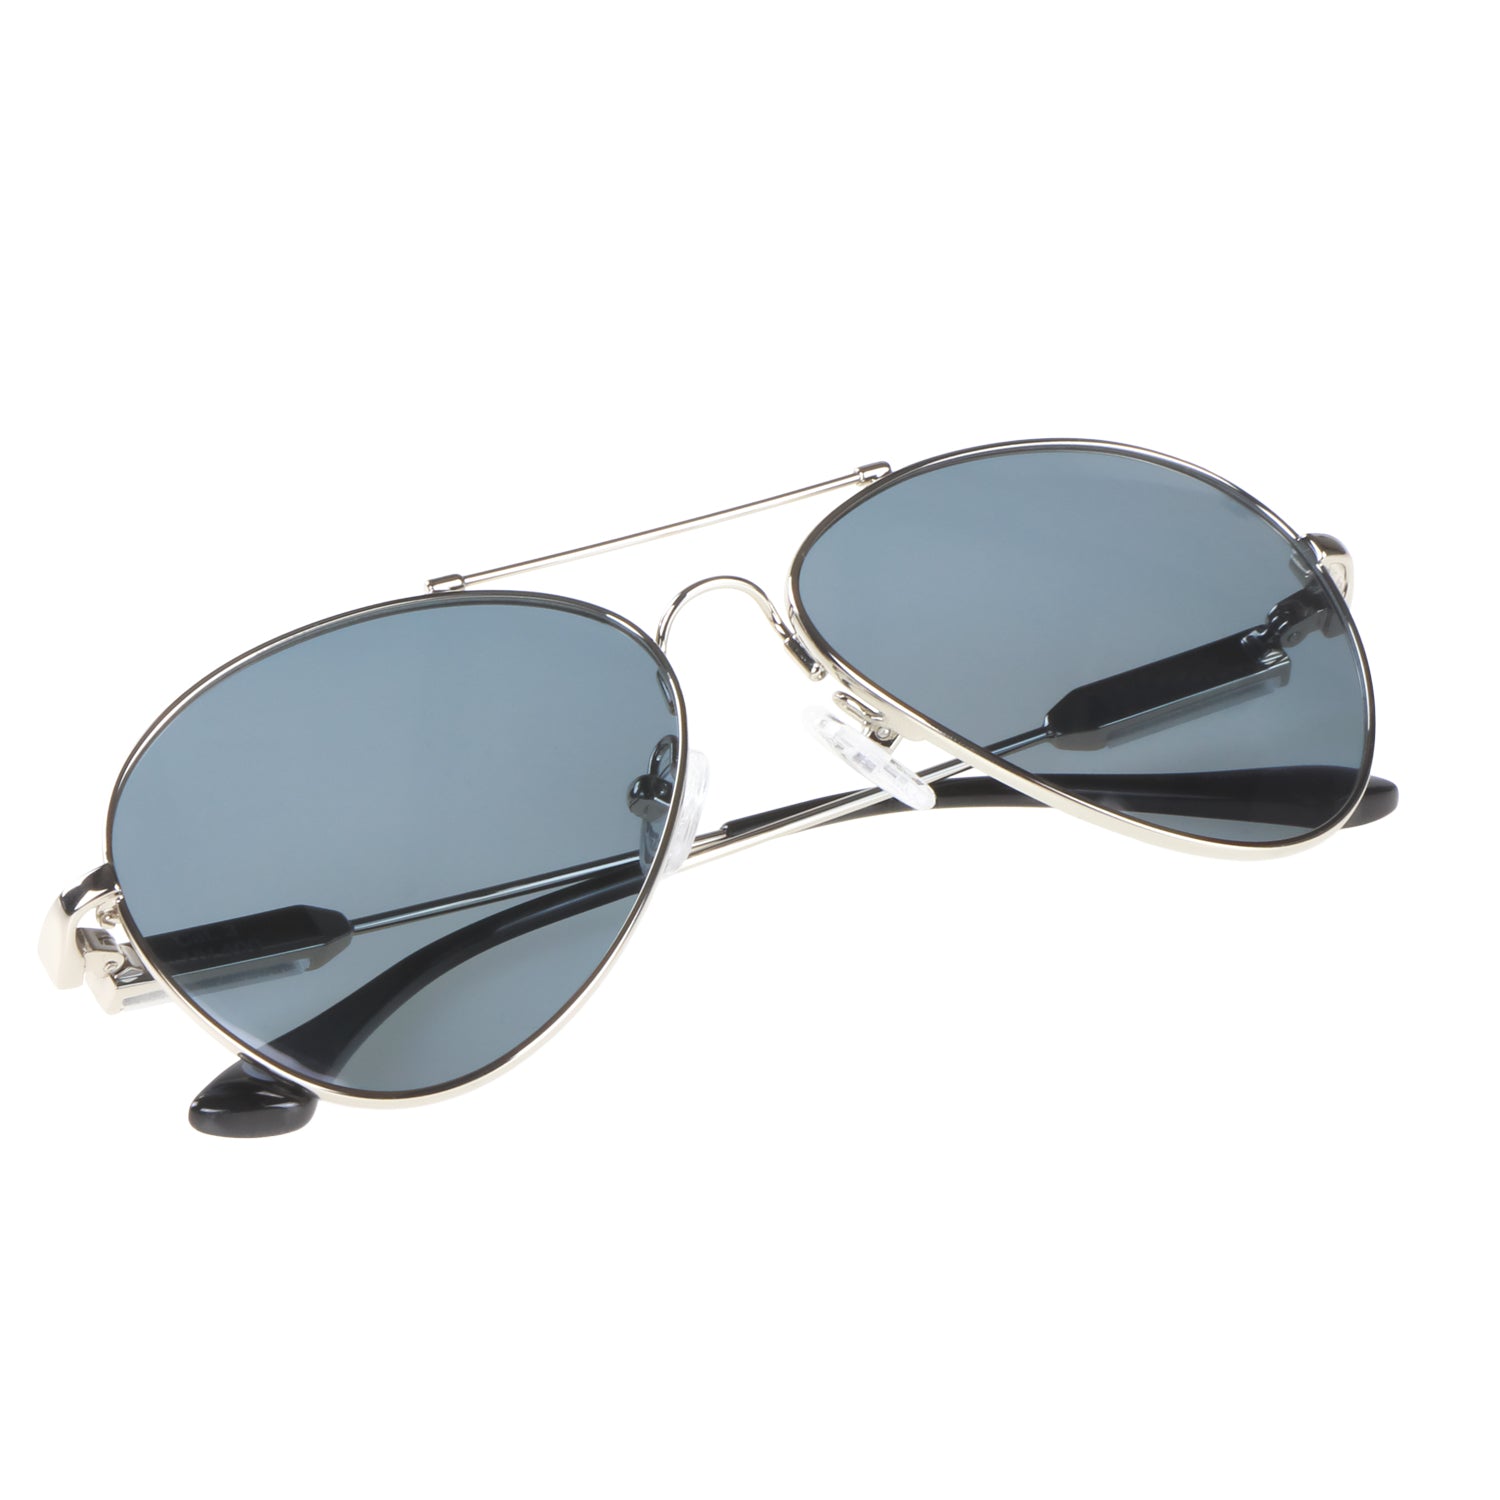 Kinder-Sonnenbrille Iron Air, 6 - 12 Jahre, Piloten-Design , Silber | Graue Gläser